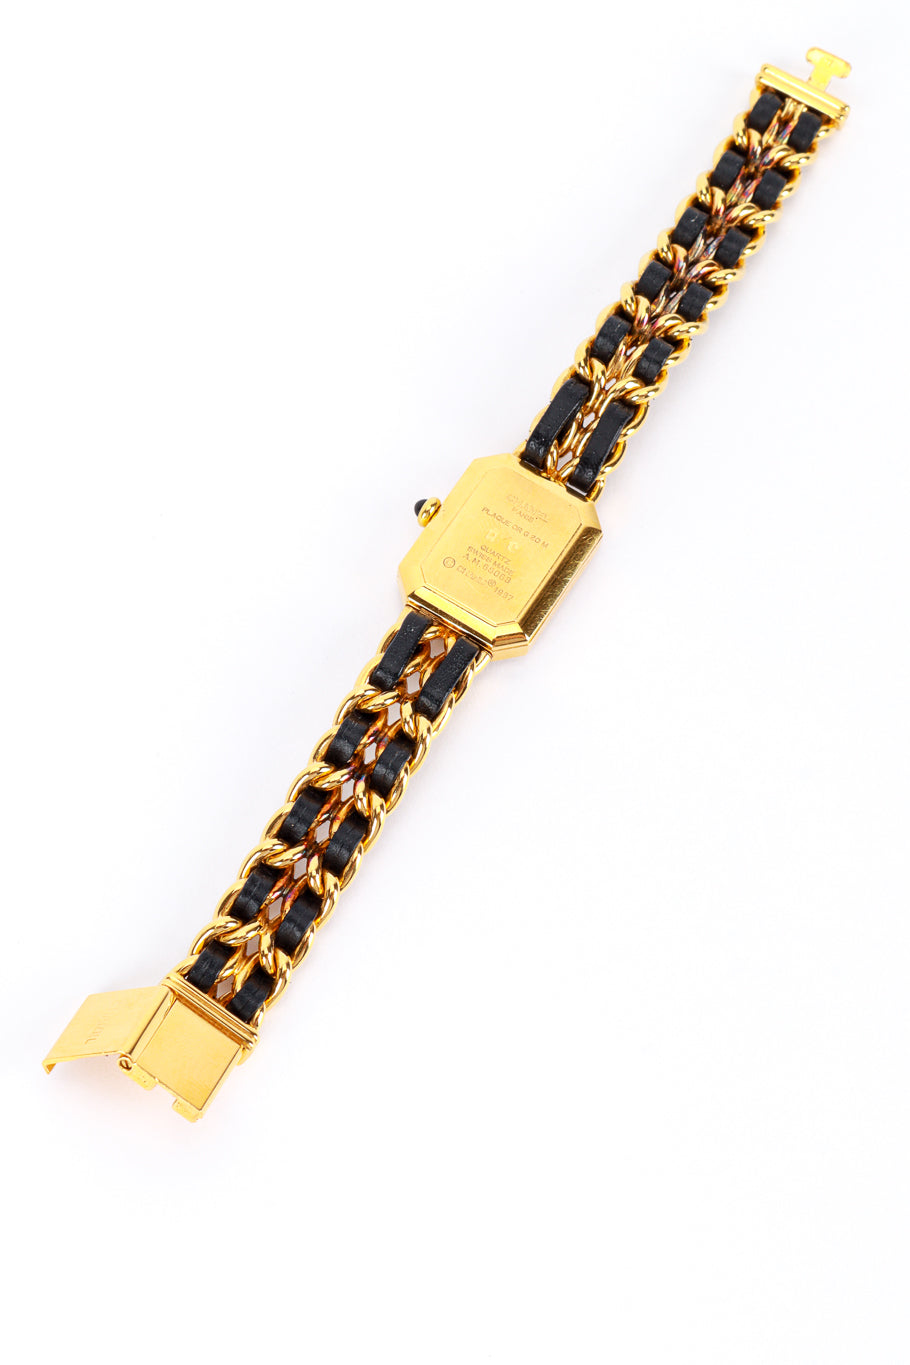 Premier Chain Bracelet Watch by Chanel back flat lay @RECESS LA